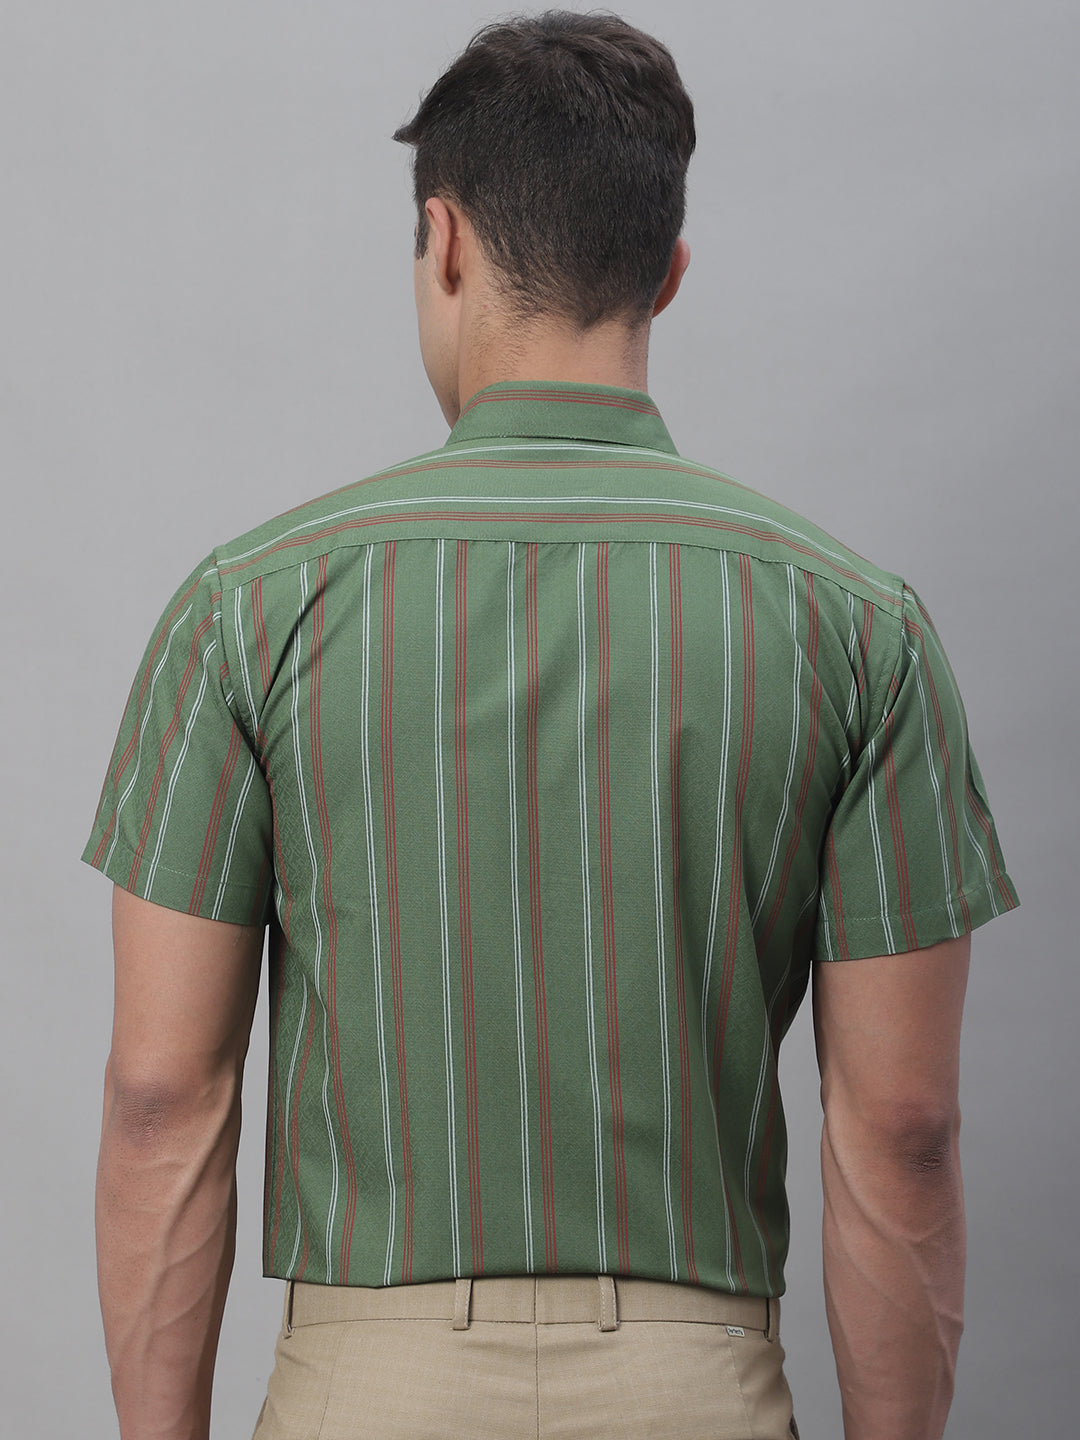 Men's Olive Green Striped Formal Shirt